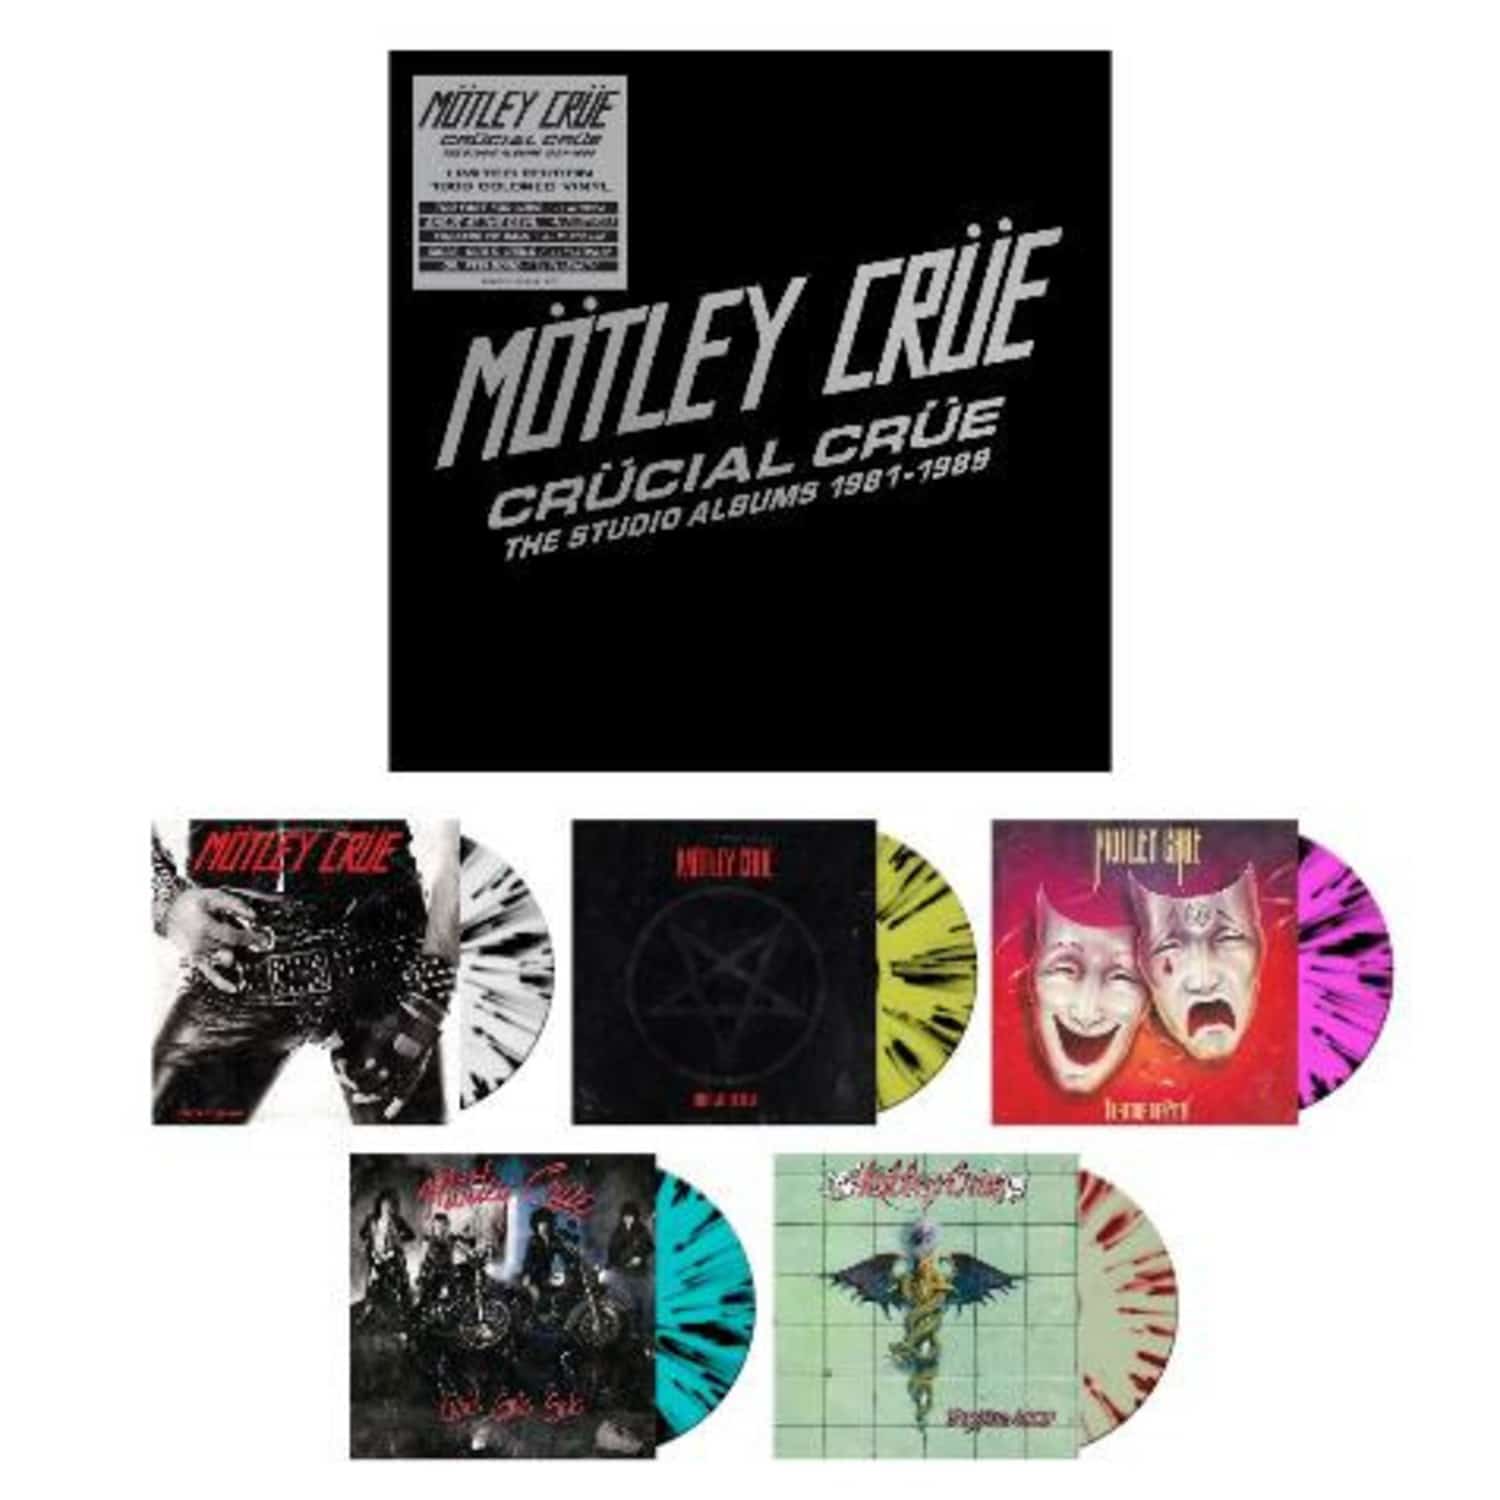 Mtley Cre - CRCIAL CRE-THE STUDIO ALBUMS 1981-1989 